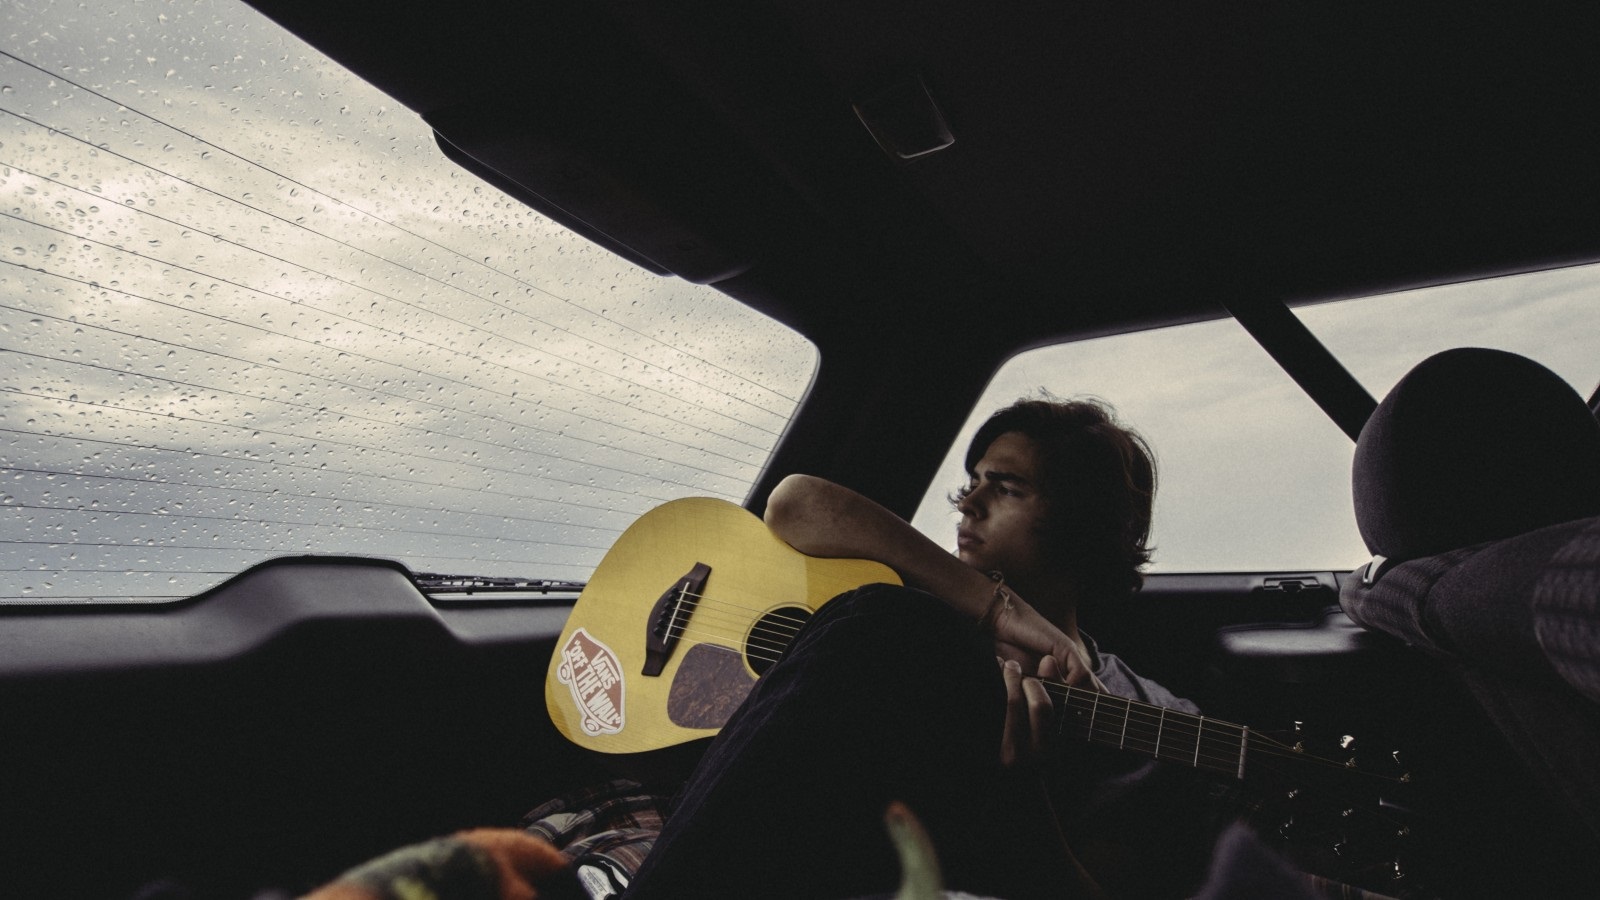 Казахская музыка в машину. Гитара в машине. Что такое гитара в автомобиле. Музыканты путешествуют в машин. Парень на машине с гитарой.